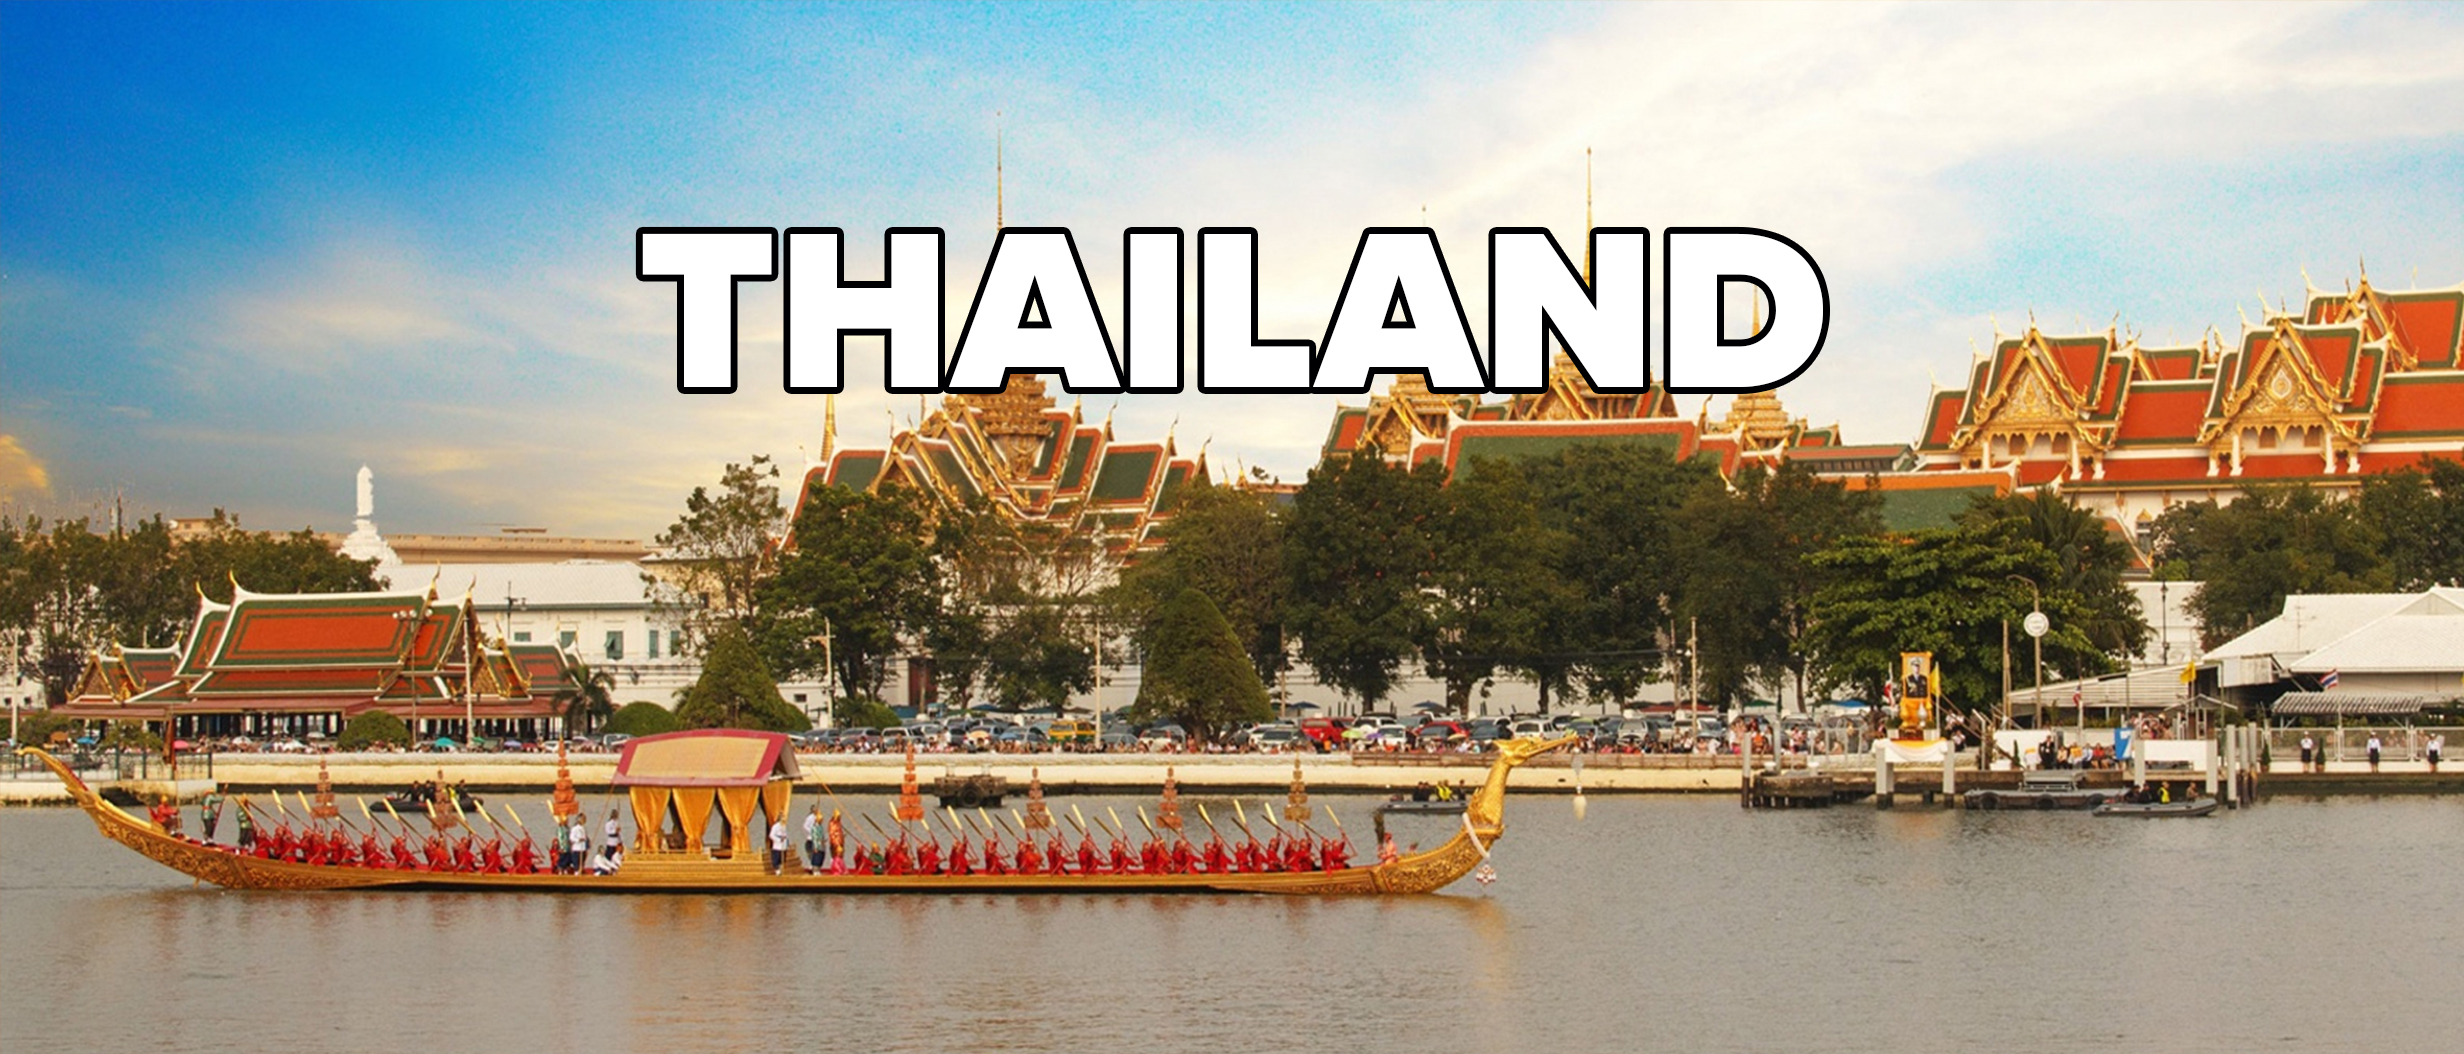 Thailand 2023